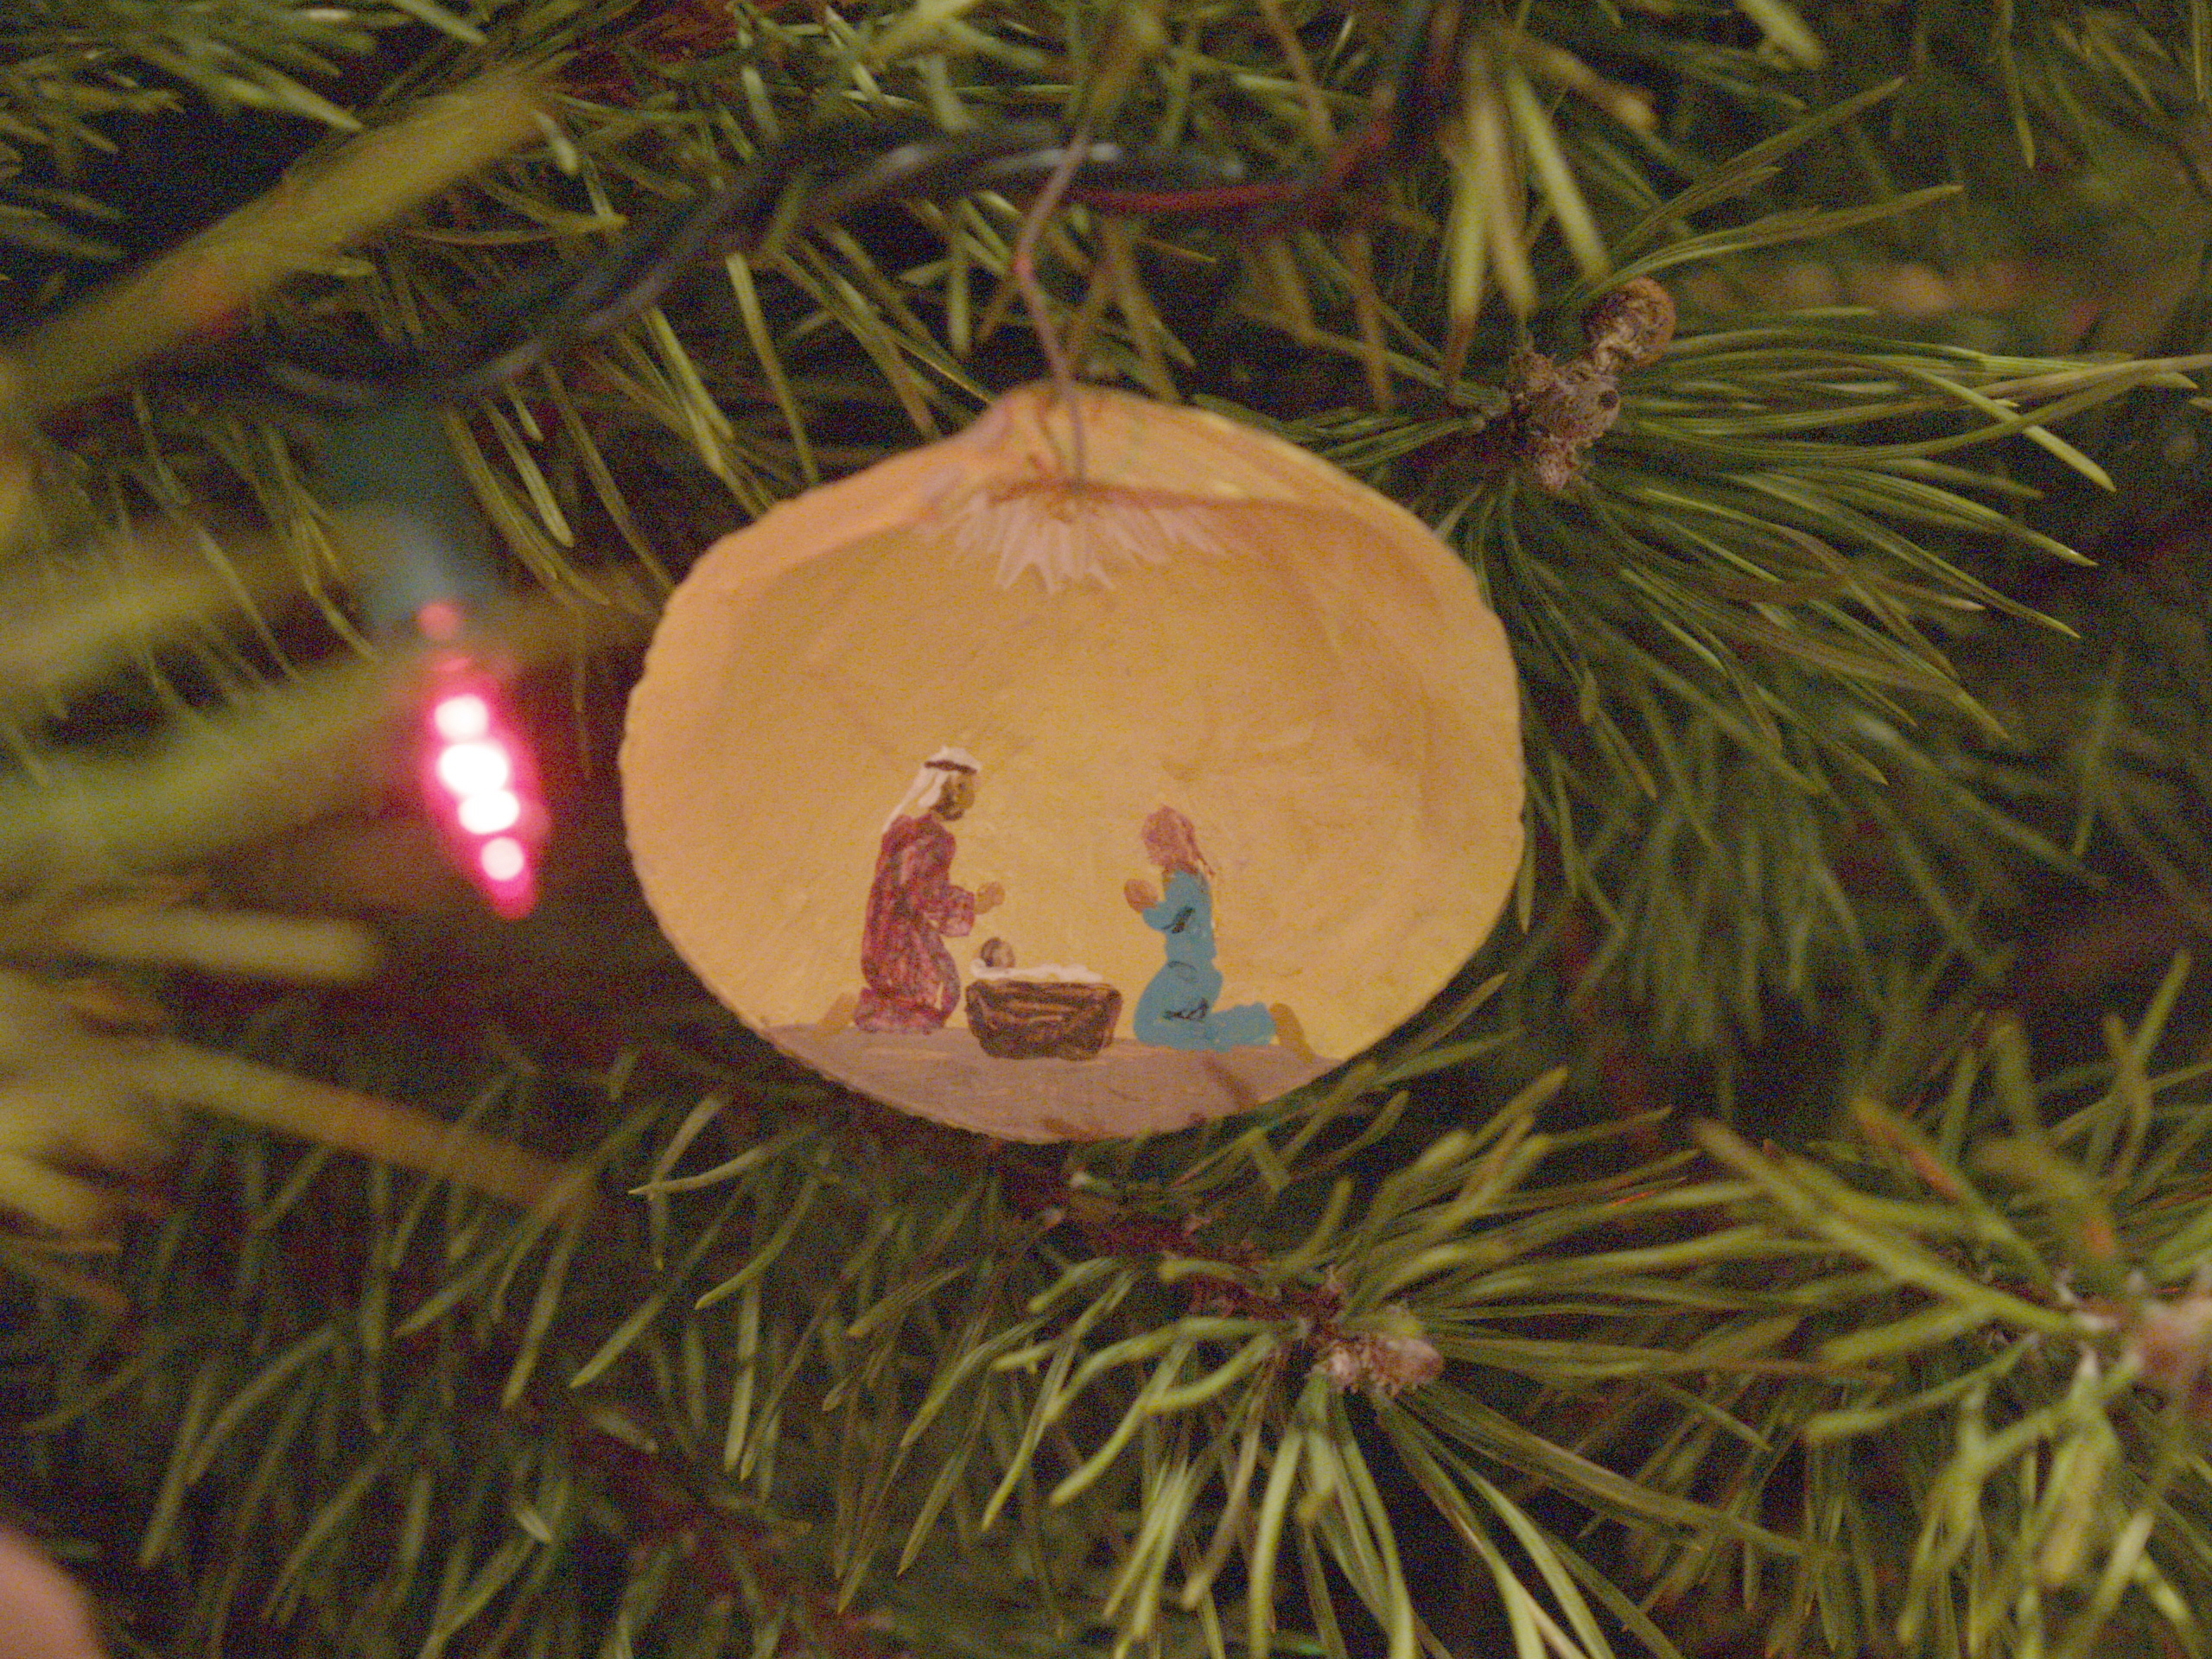 Nativity Christmas ornament Liz's mom made